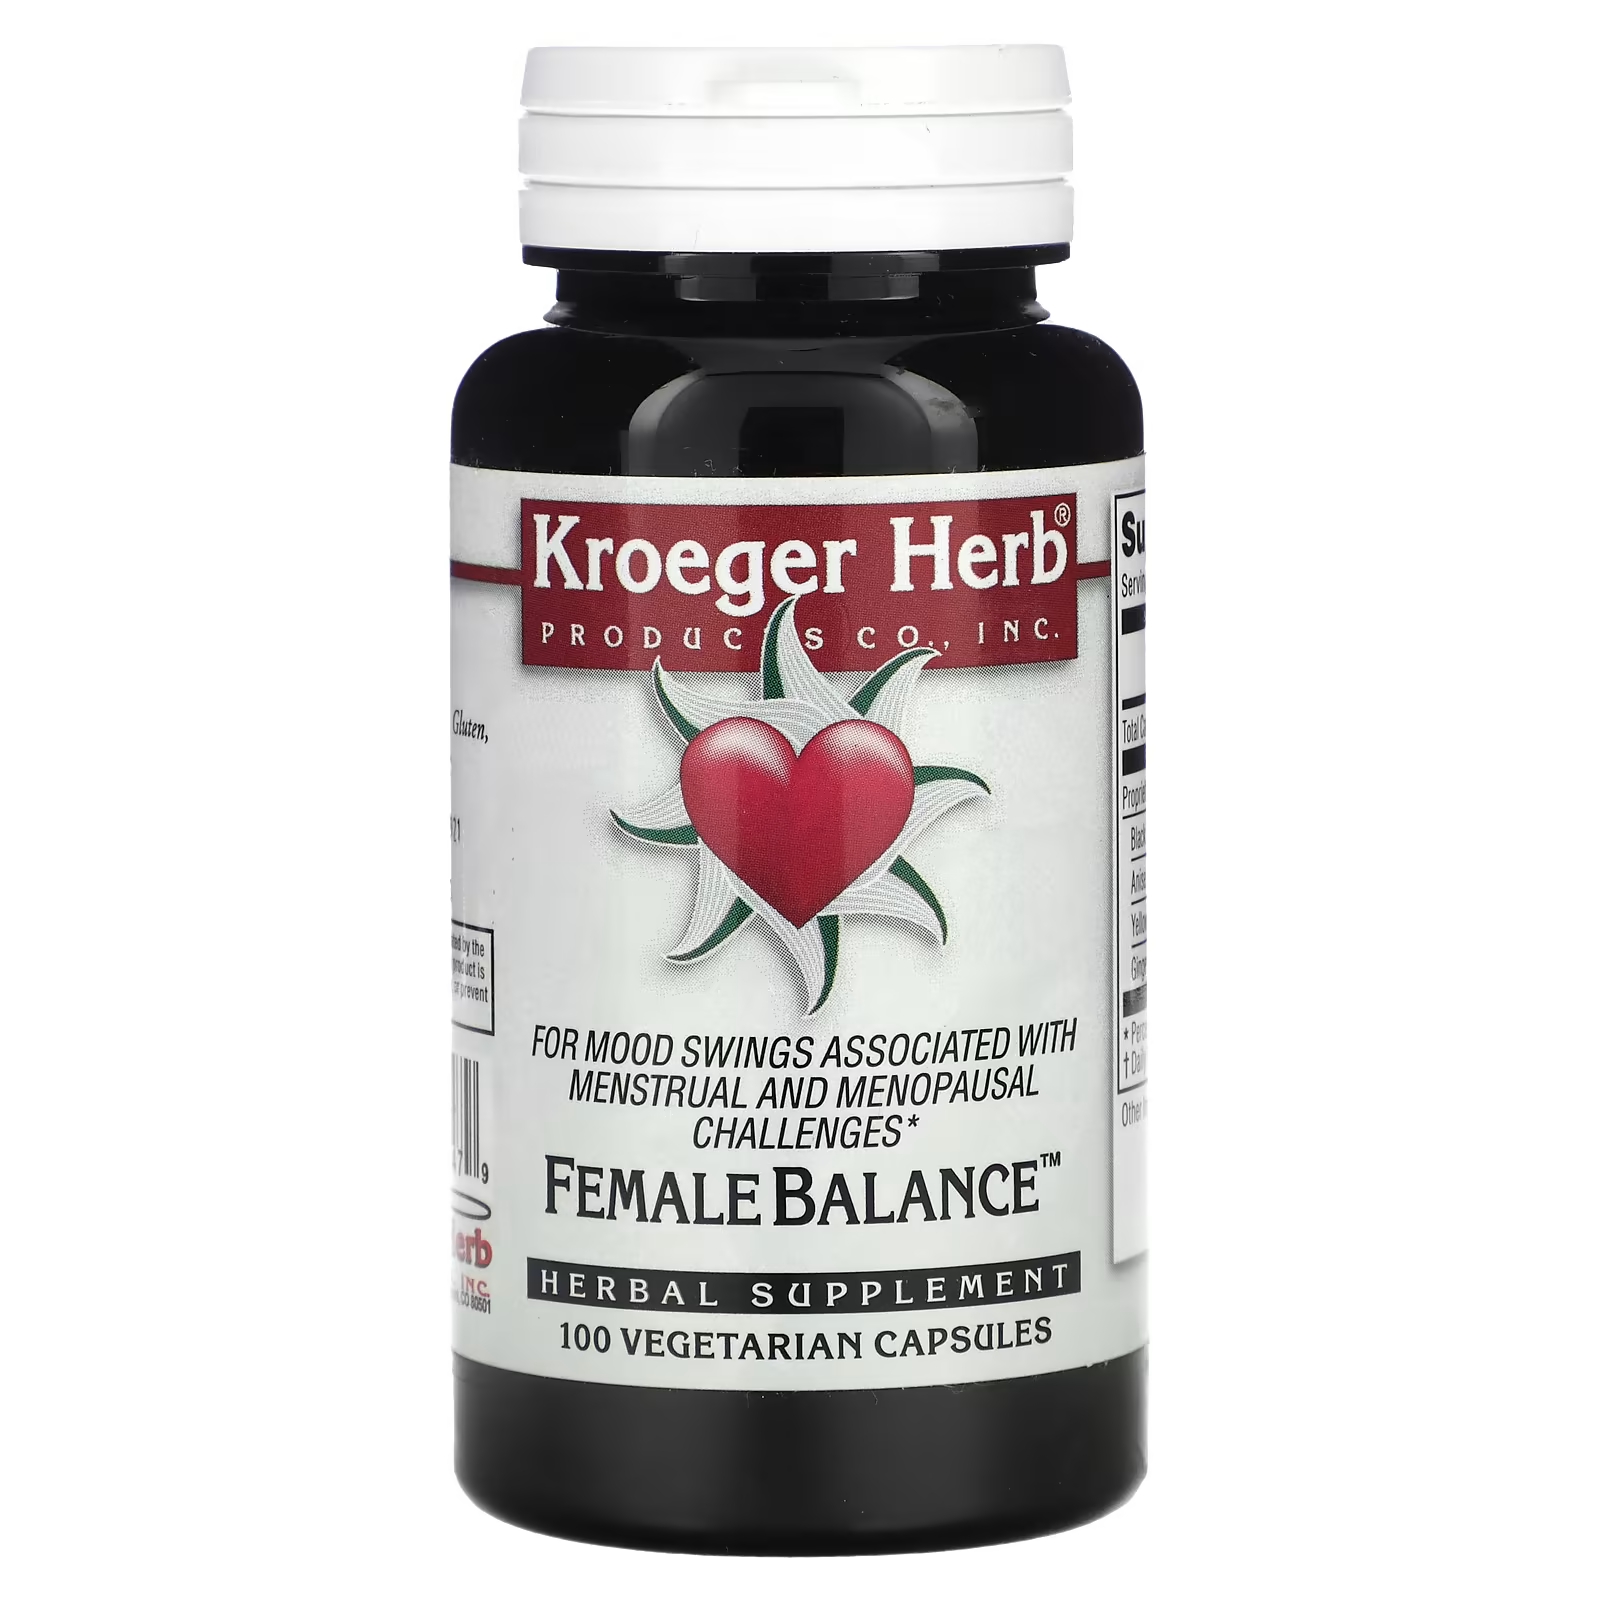 Растительная добавка Kroeger Herb Co женский баланс, 100 капсул растительная добавка kroeger herb co балансировщик полярности 100 капсул